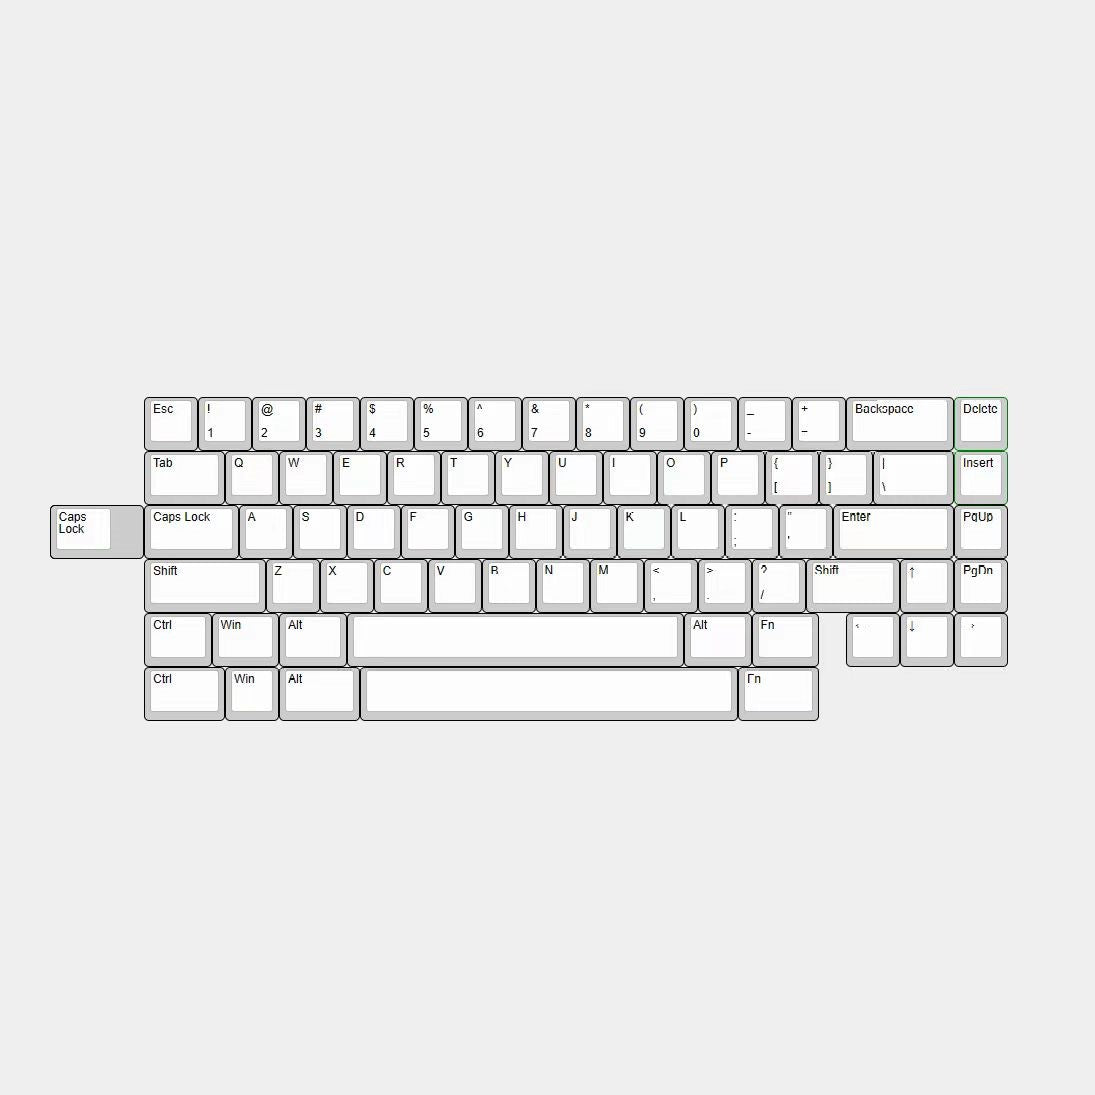 Choice65 Keyboard Kit - Group-Buy